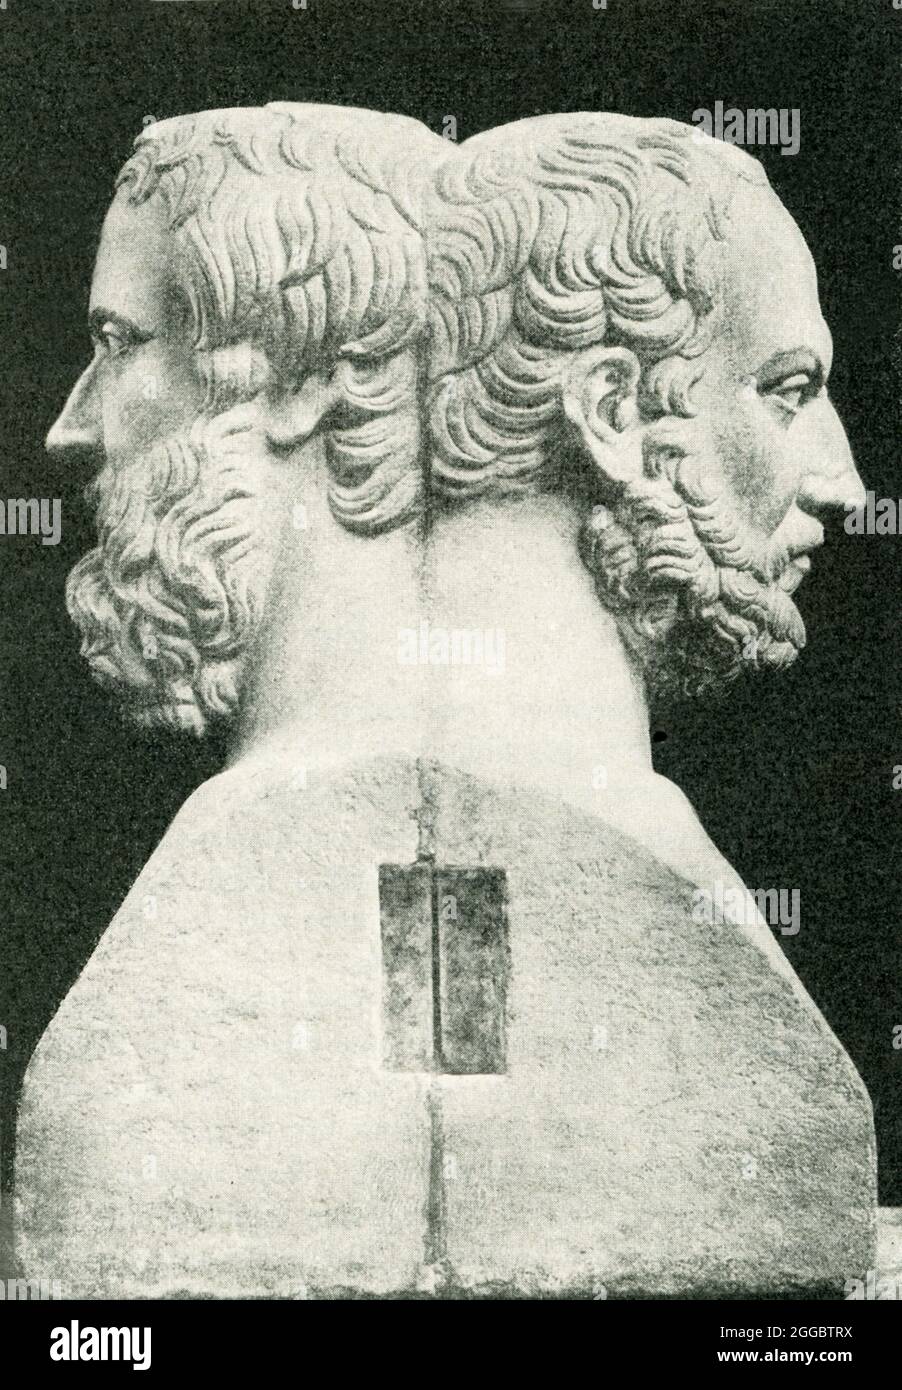 Aquí vemos una doble herma de los antiguos historiadores griegos Herodoto y Tucídides. En la antigua religión griega, un herm era objeto sagrado de piedra conectado con el culto de Hermes, el dios de la fertilidad. Foto de stock